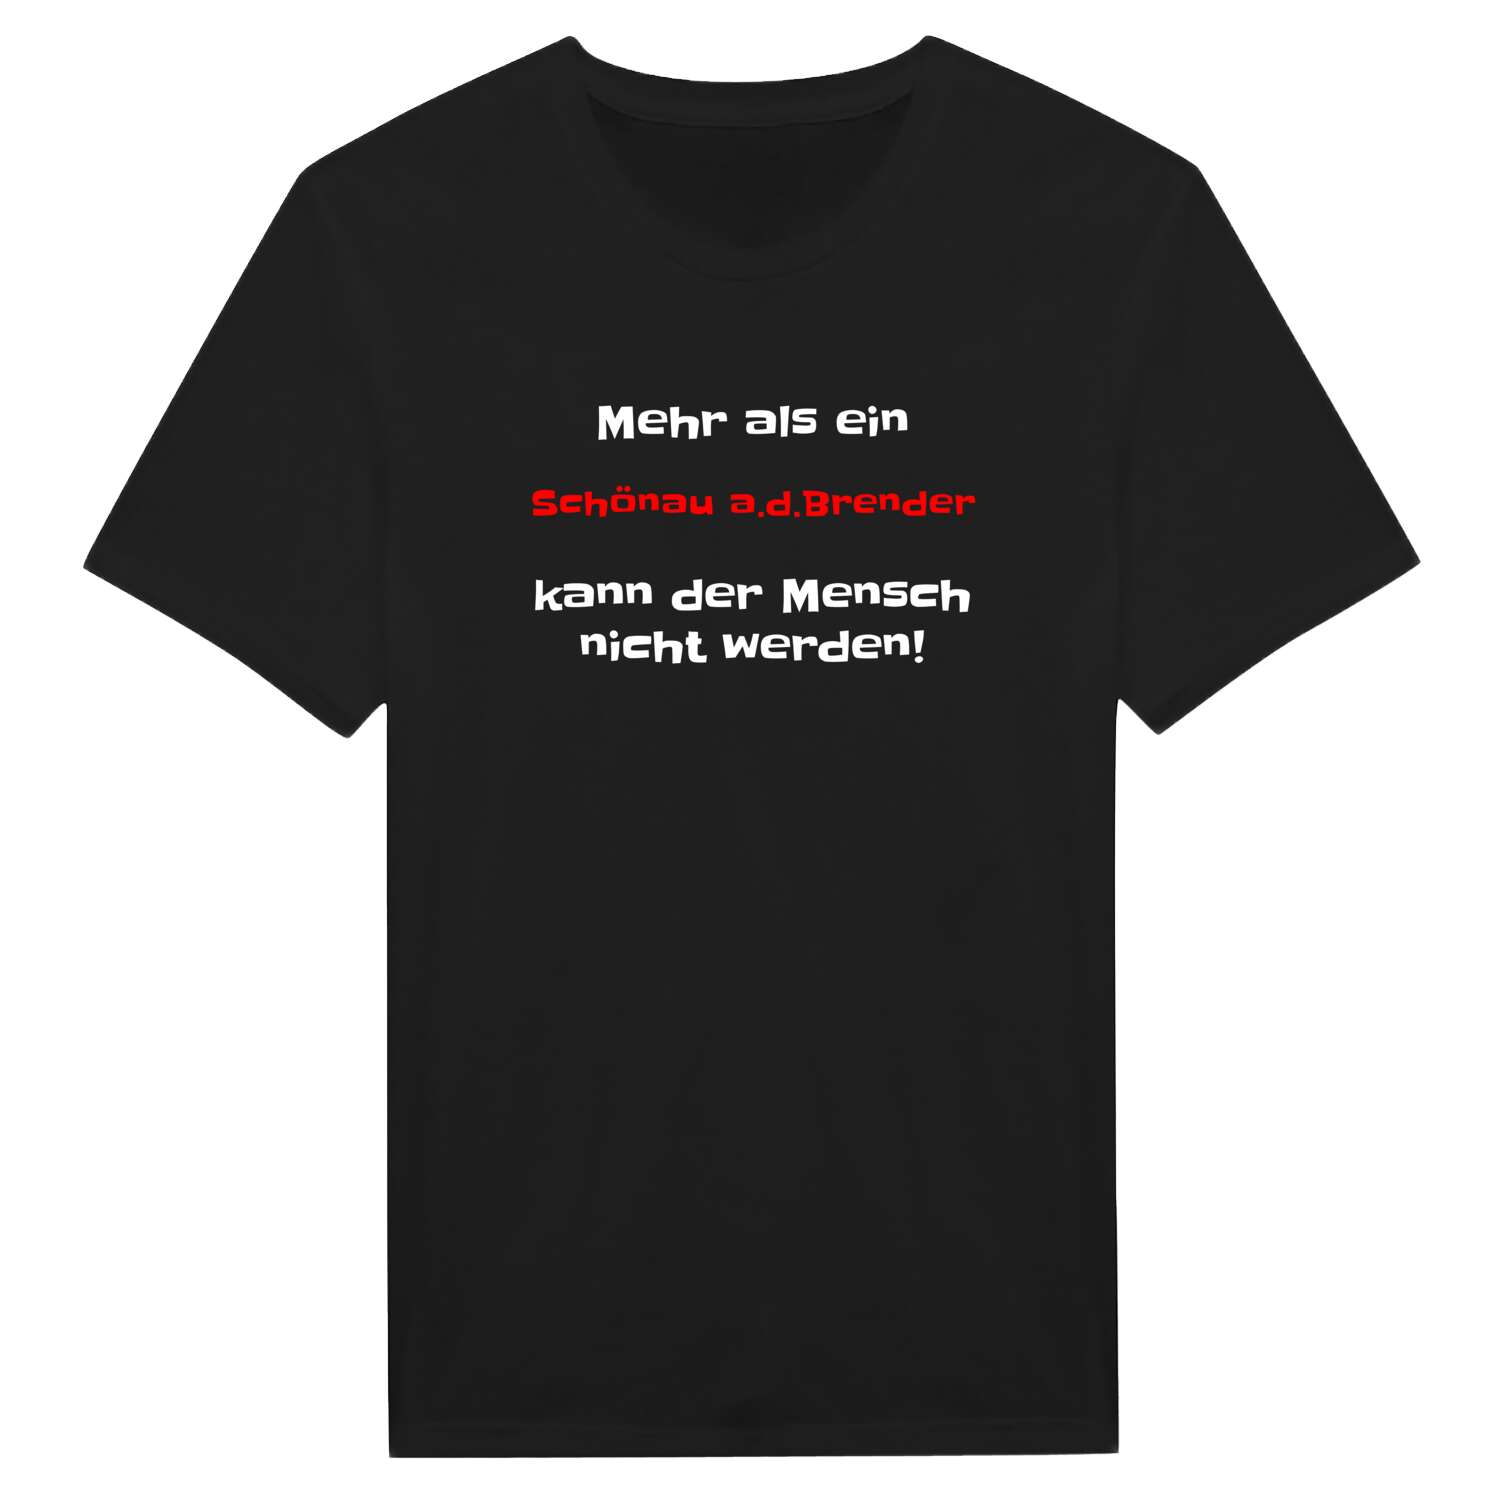 Schönau a.d.Brend T-Shirt »Mehr als ein«